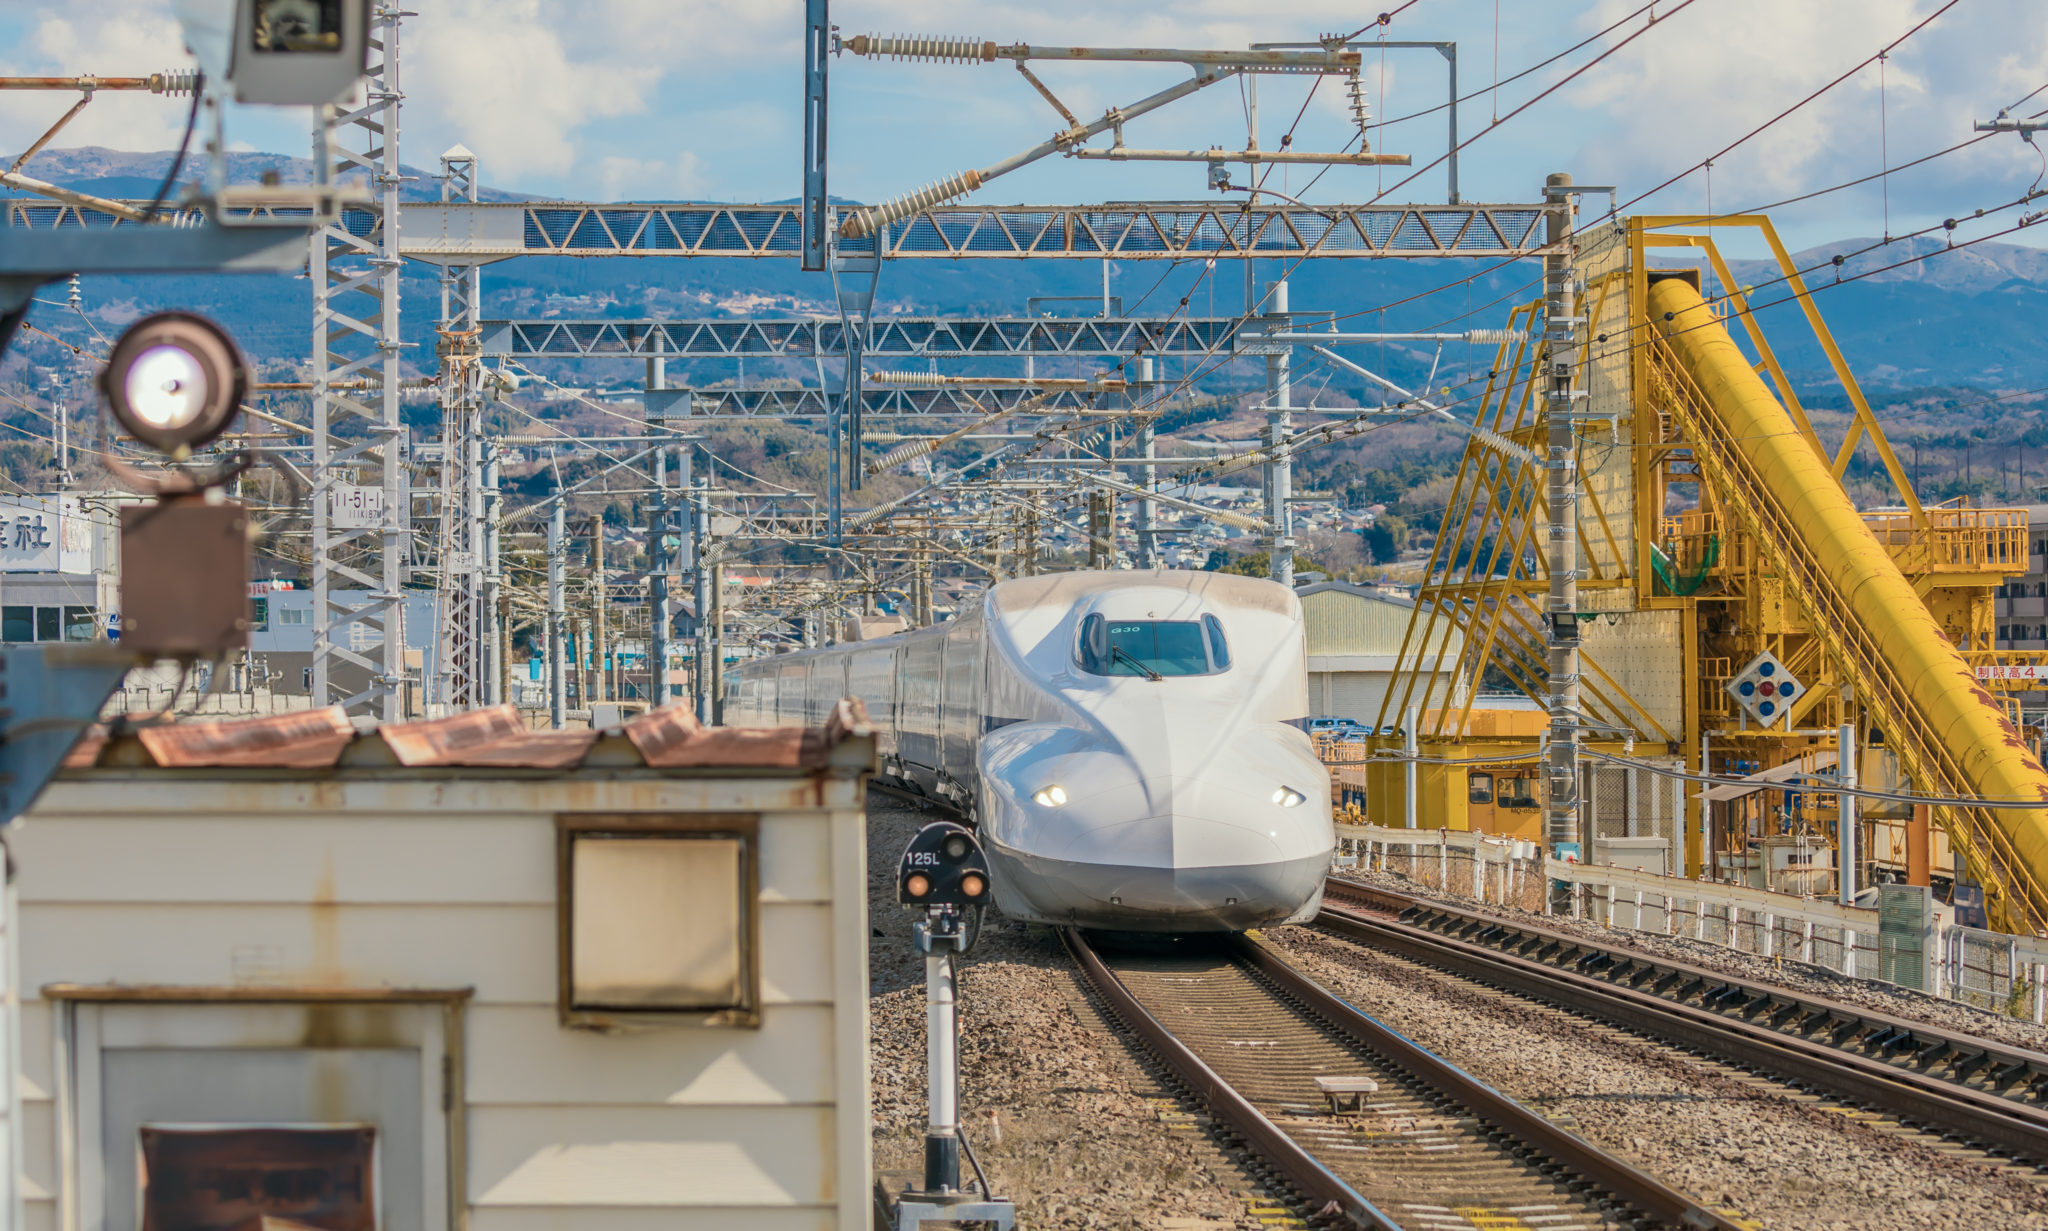 Mishima Station - Shinkansen